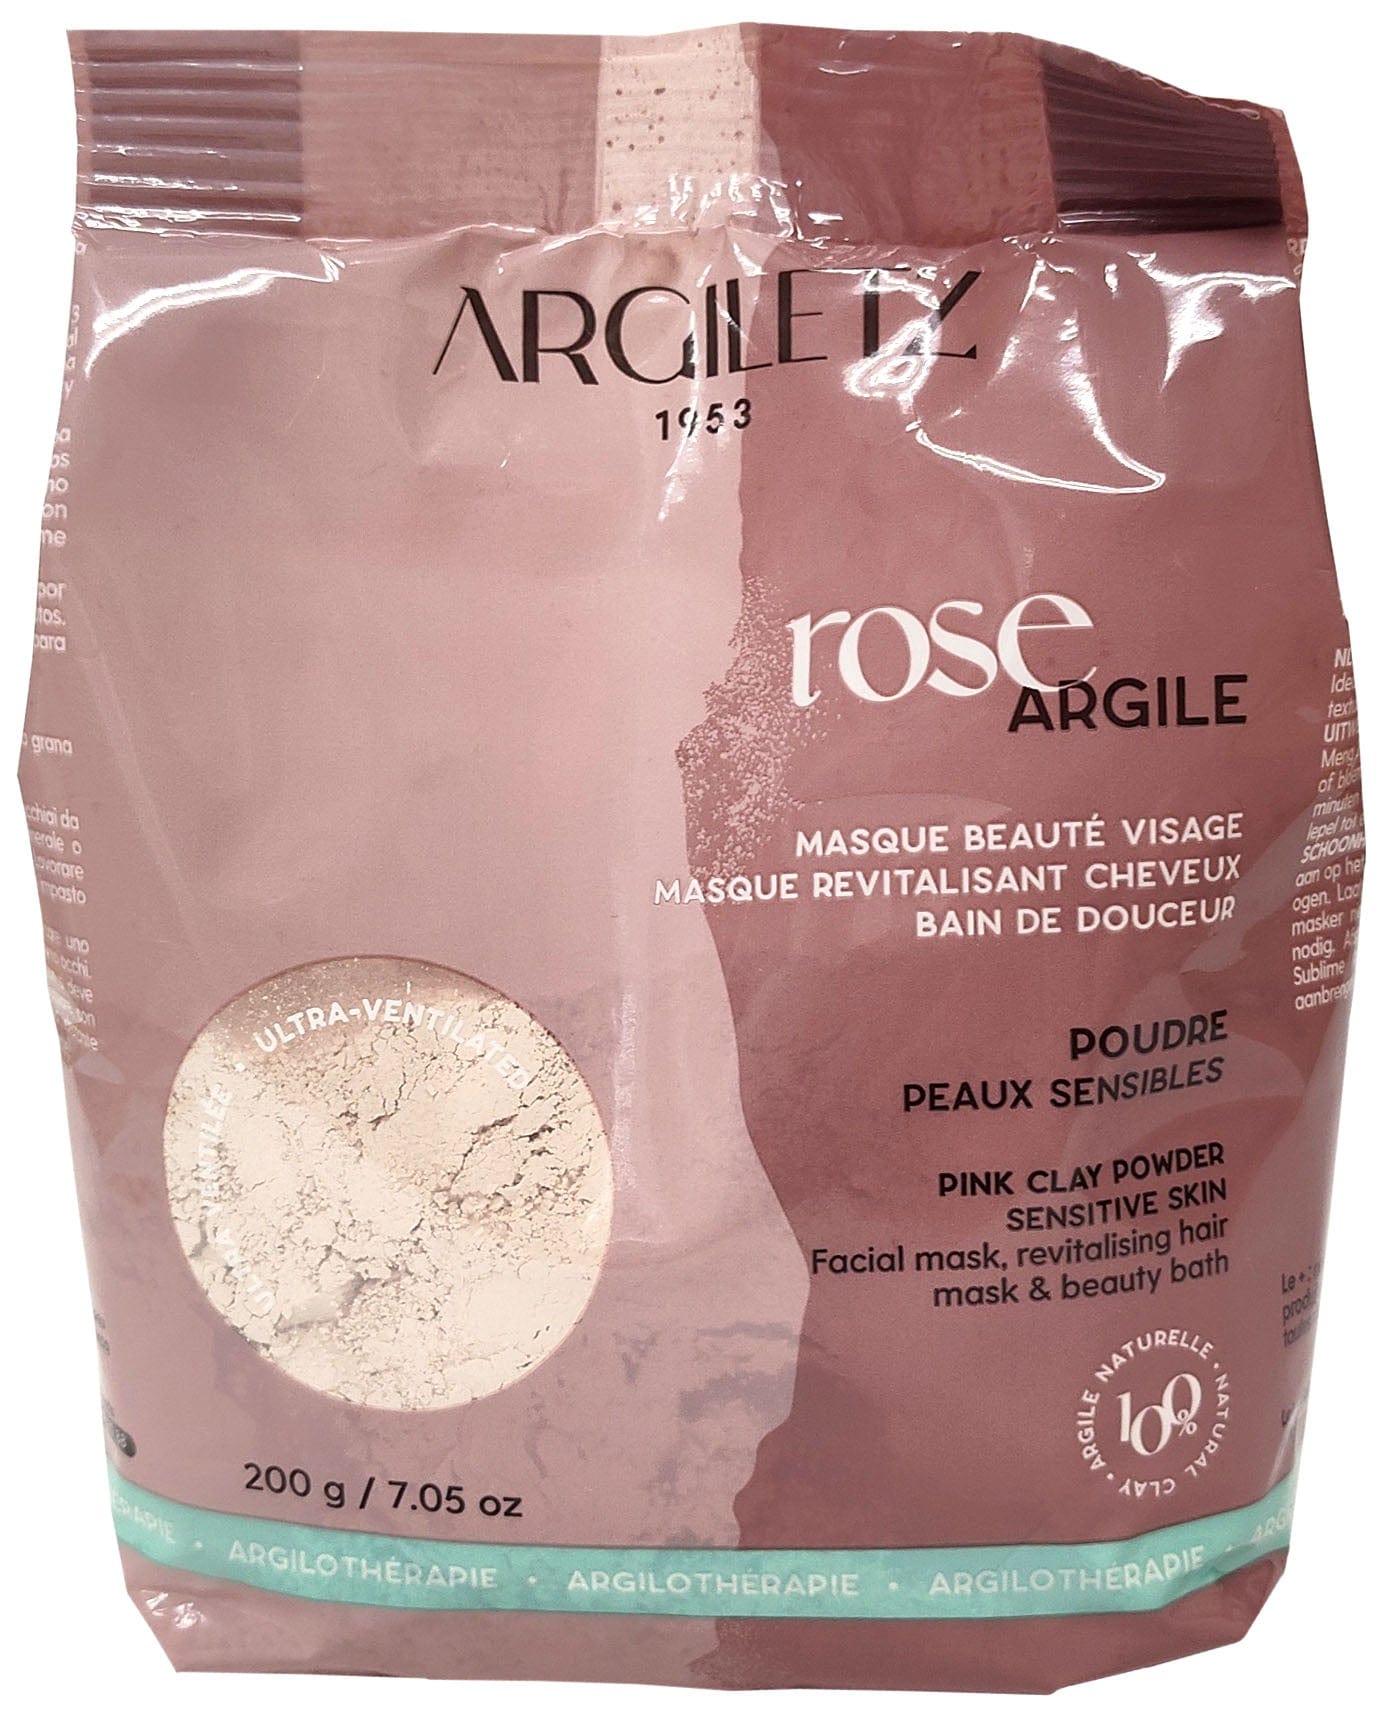 ARGILETZ Soins & beauté Argile rose ultra-ventilée (peau sensible) 200g